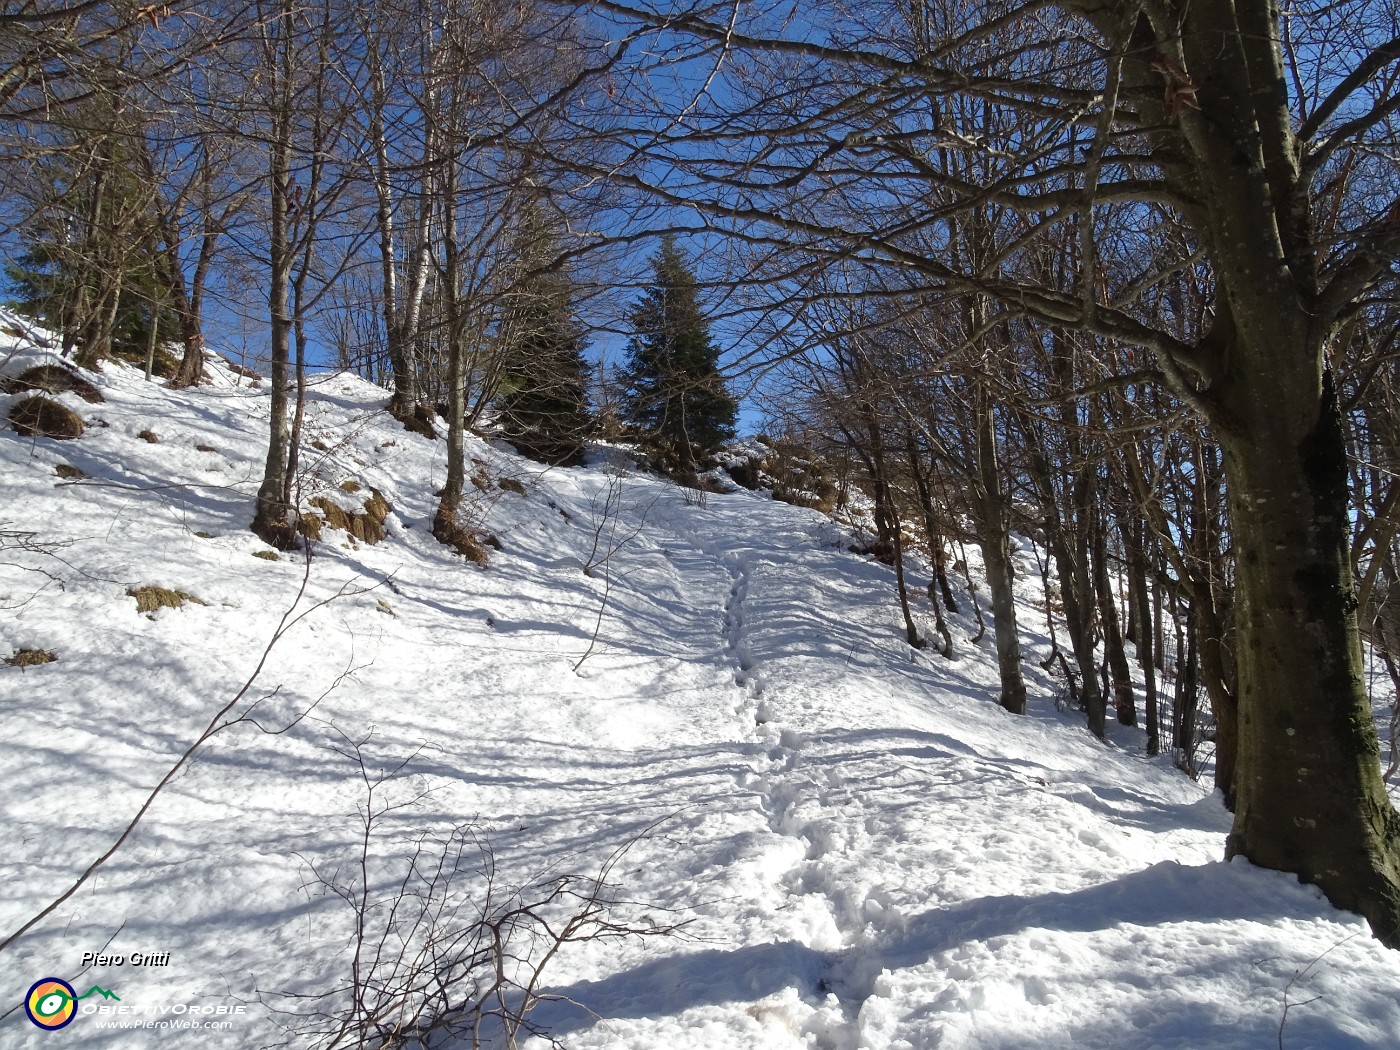 38 Pestando soffice neve dal Buco della Carolina al Monte Poieto sul sent. 537.JPG